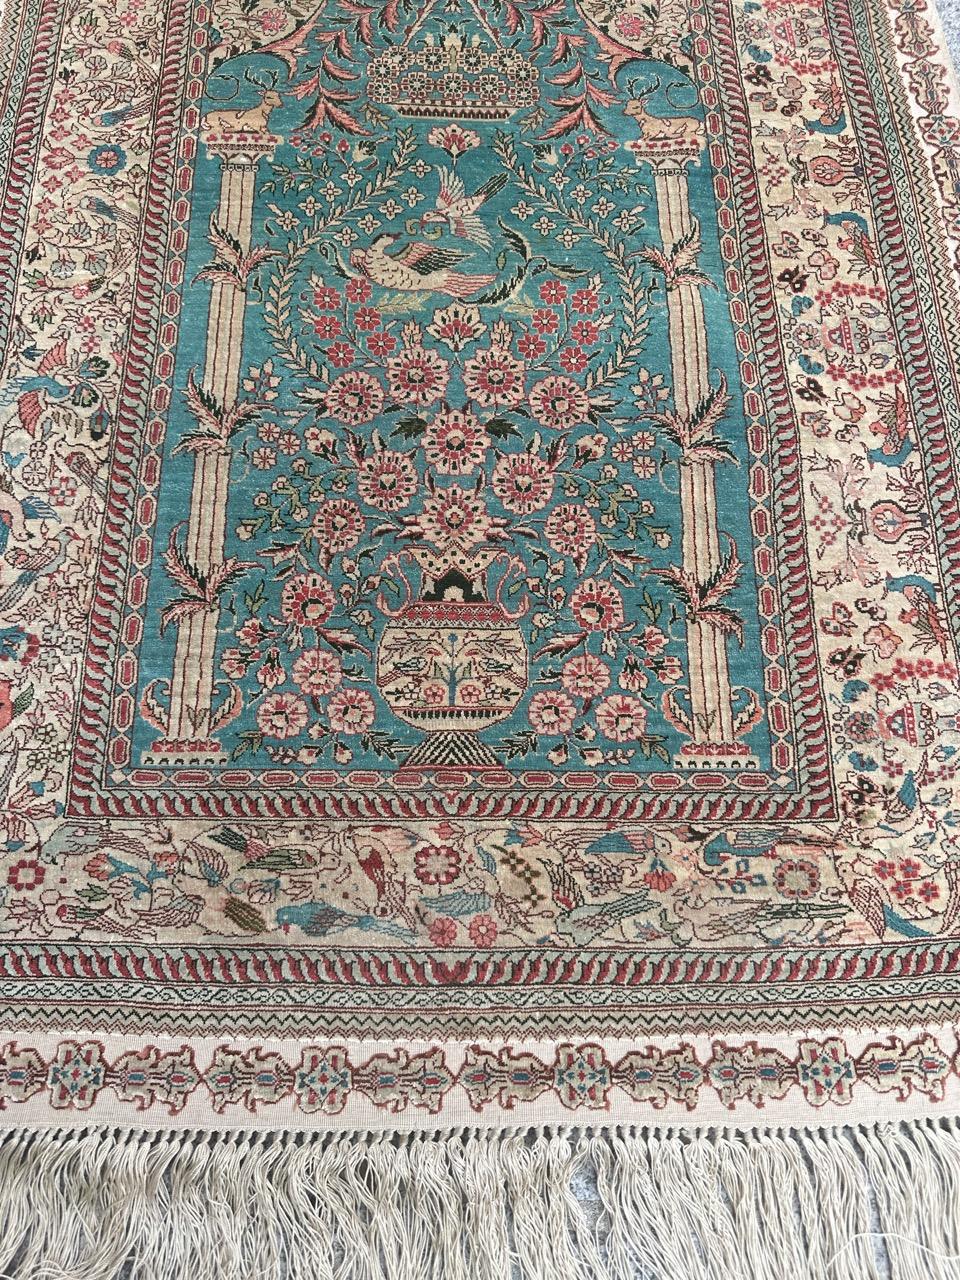 Voici un exquis tapis en soie fine de la fin du XXe siècle, présentant un captivant motif d'oiseaux et de fleurs. Cette superbe pièce présente des couleurs éclatantes, notamment un magnifique champ vert qui sert de toile de fond turquoise à un vase